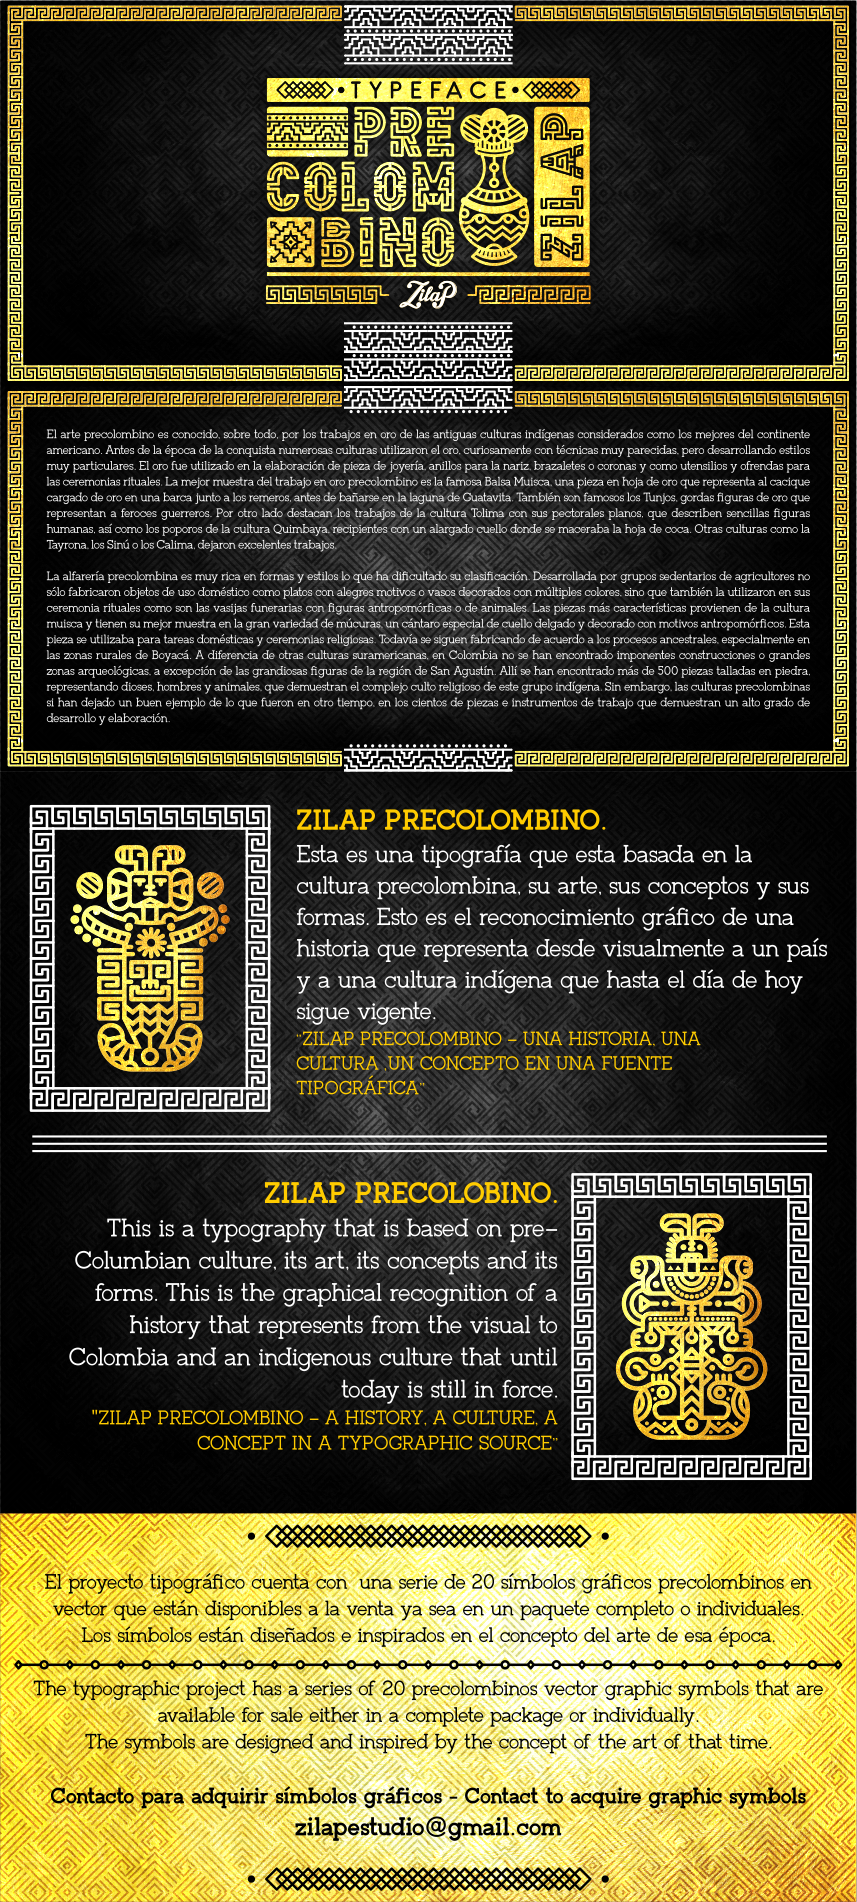 Typeface colombia precolombino cultura historia font Zilap Estudio zilap precolombino arte precolombino typography  